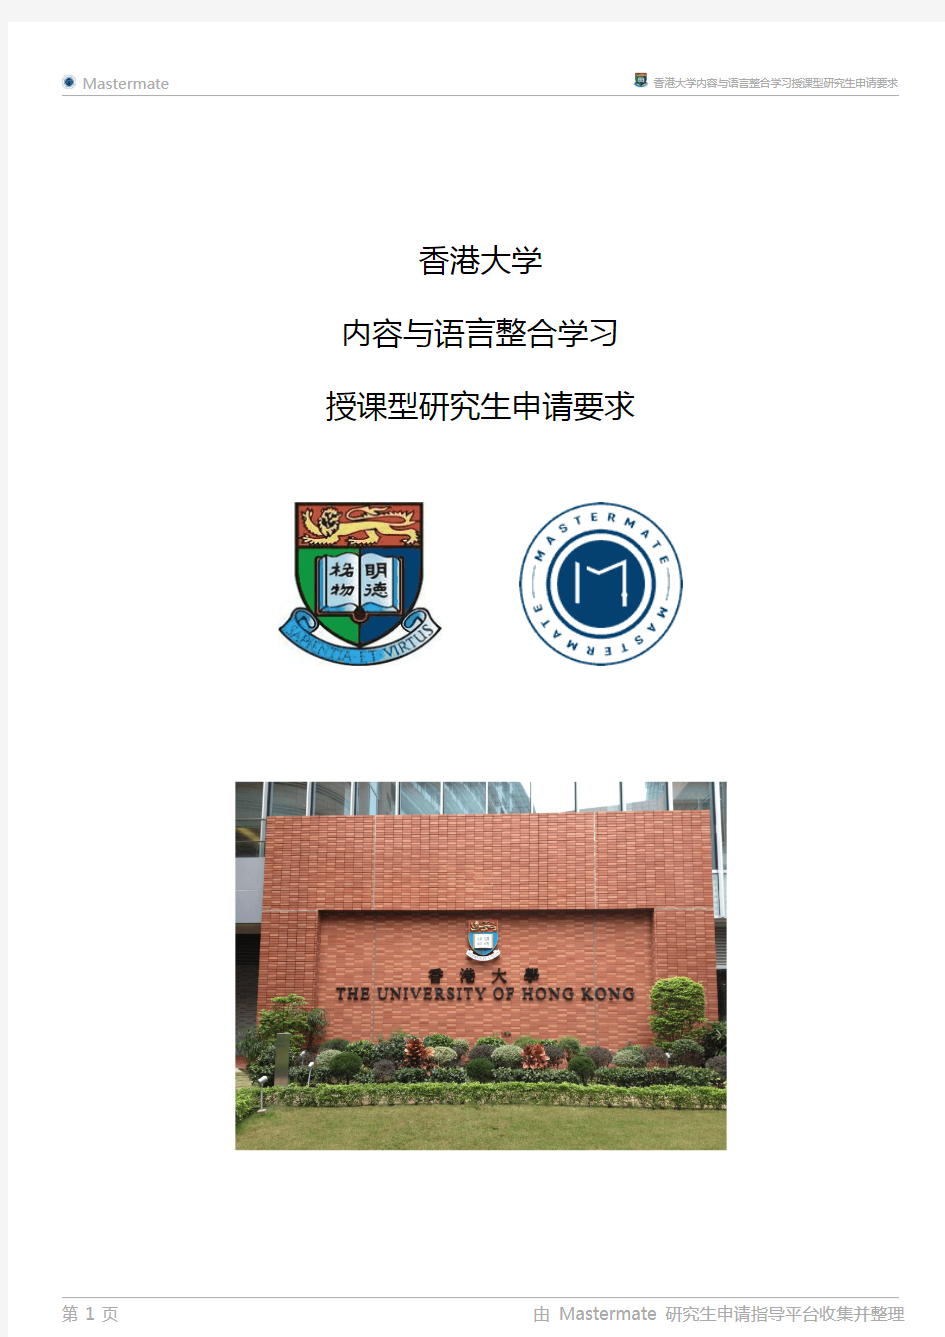 香港大学内容与语言整合学习授课型研究生申请要求